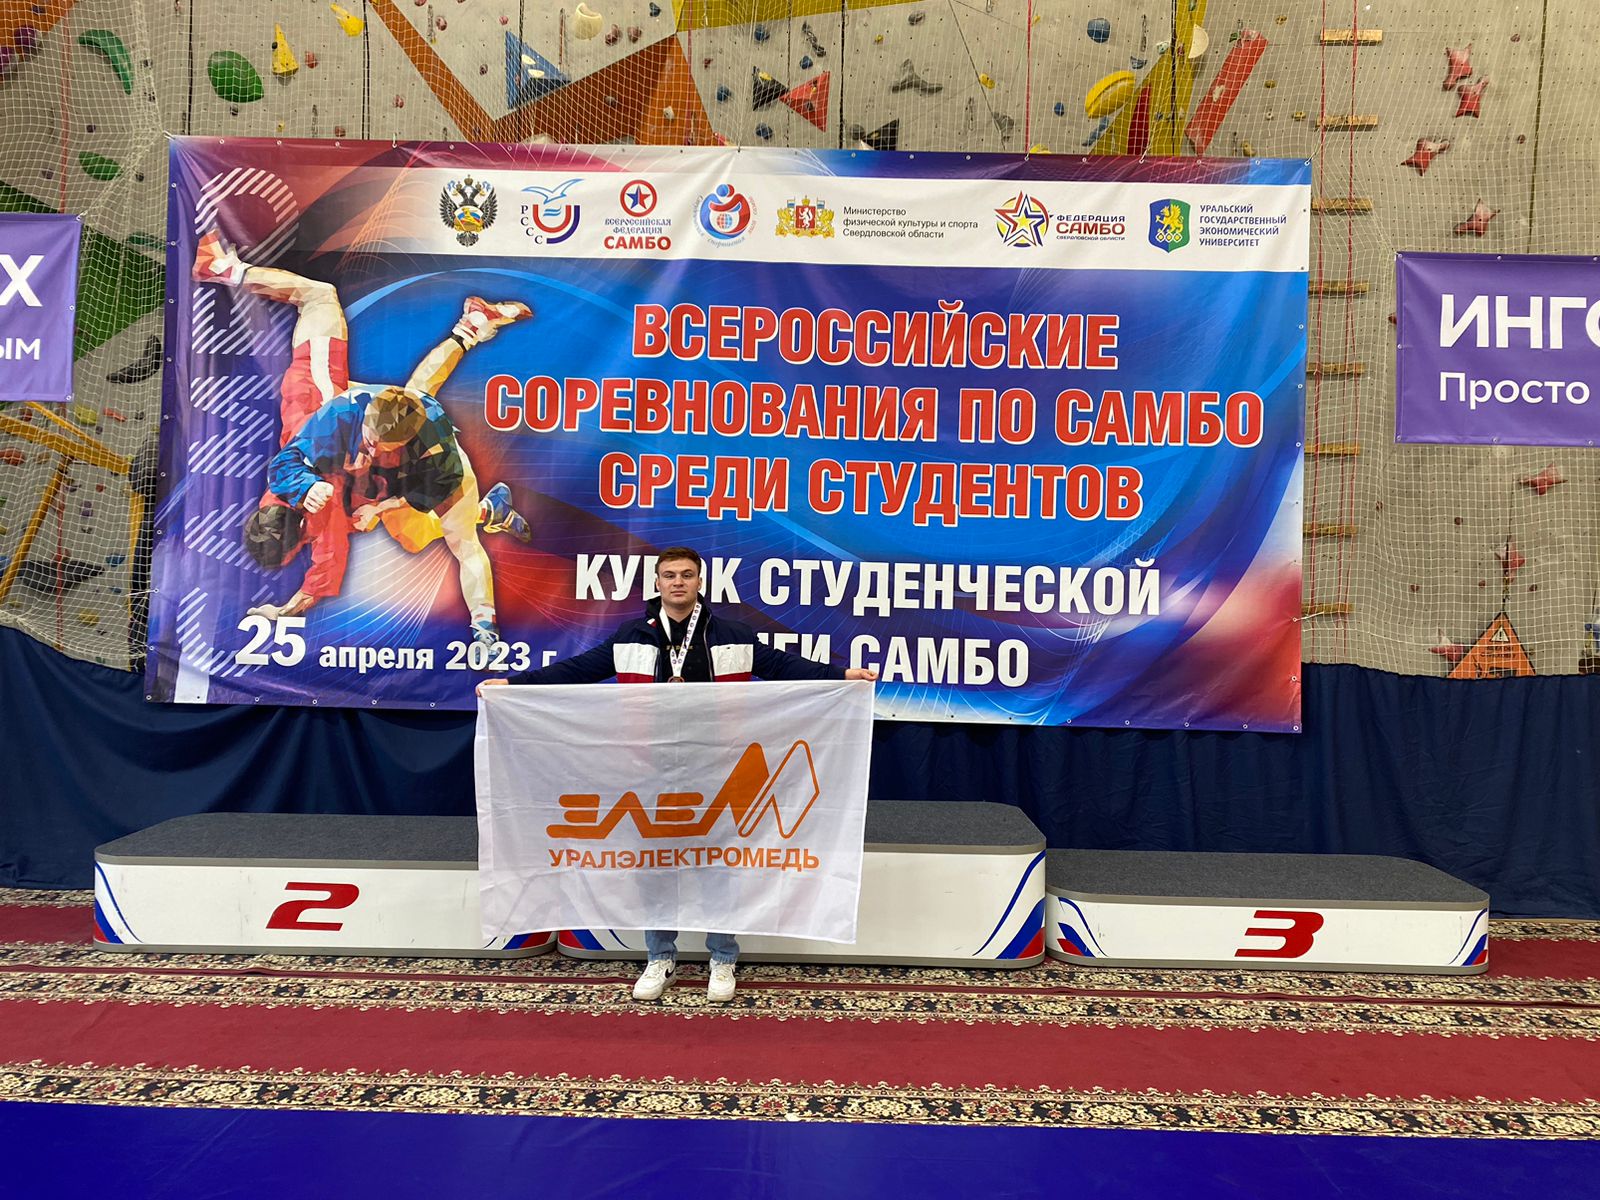 Андрей Мордовин занял третье место на Кубке Студенческой лиги самбо